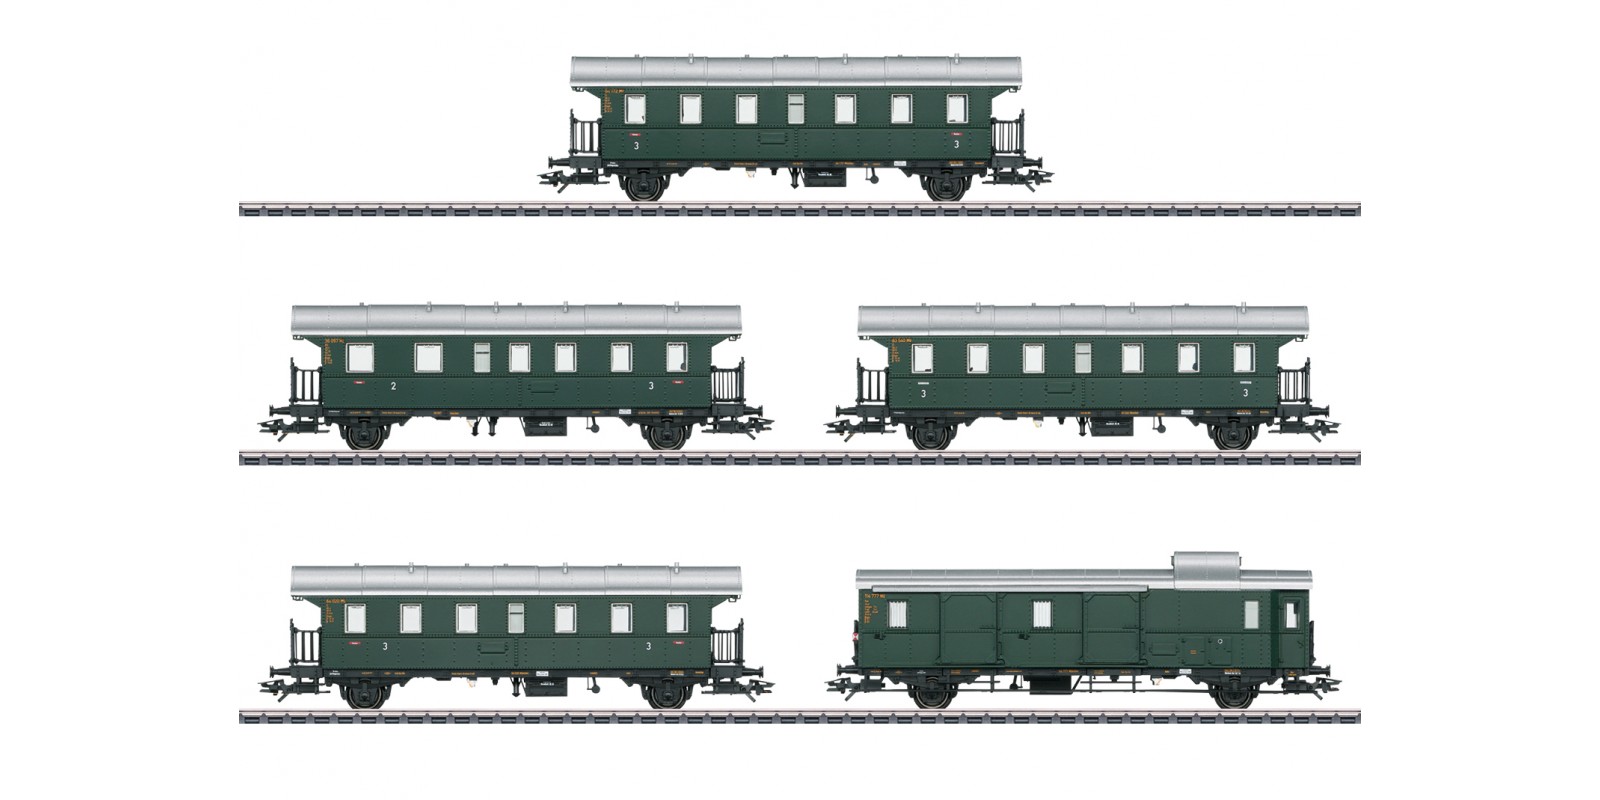 43141 "Donnerbüchsen" / "Thunder Boxes" Passenger Car Set